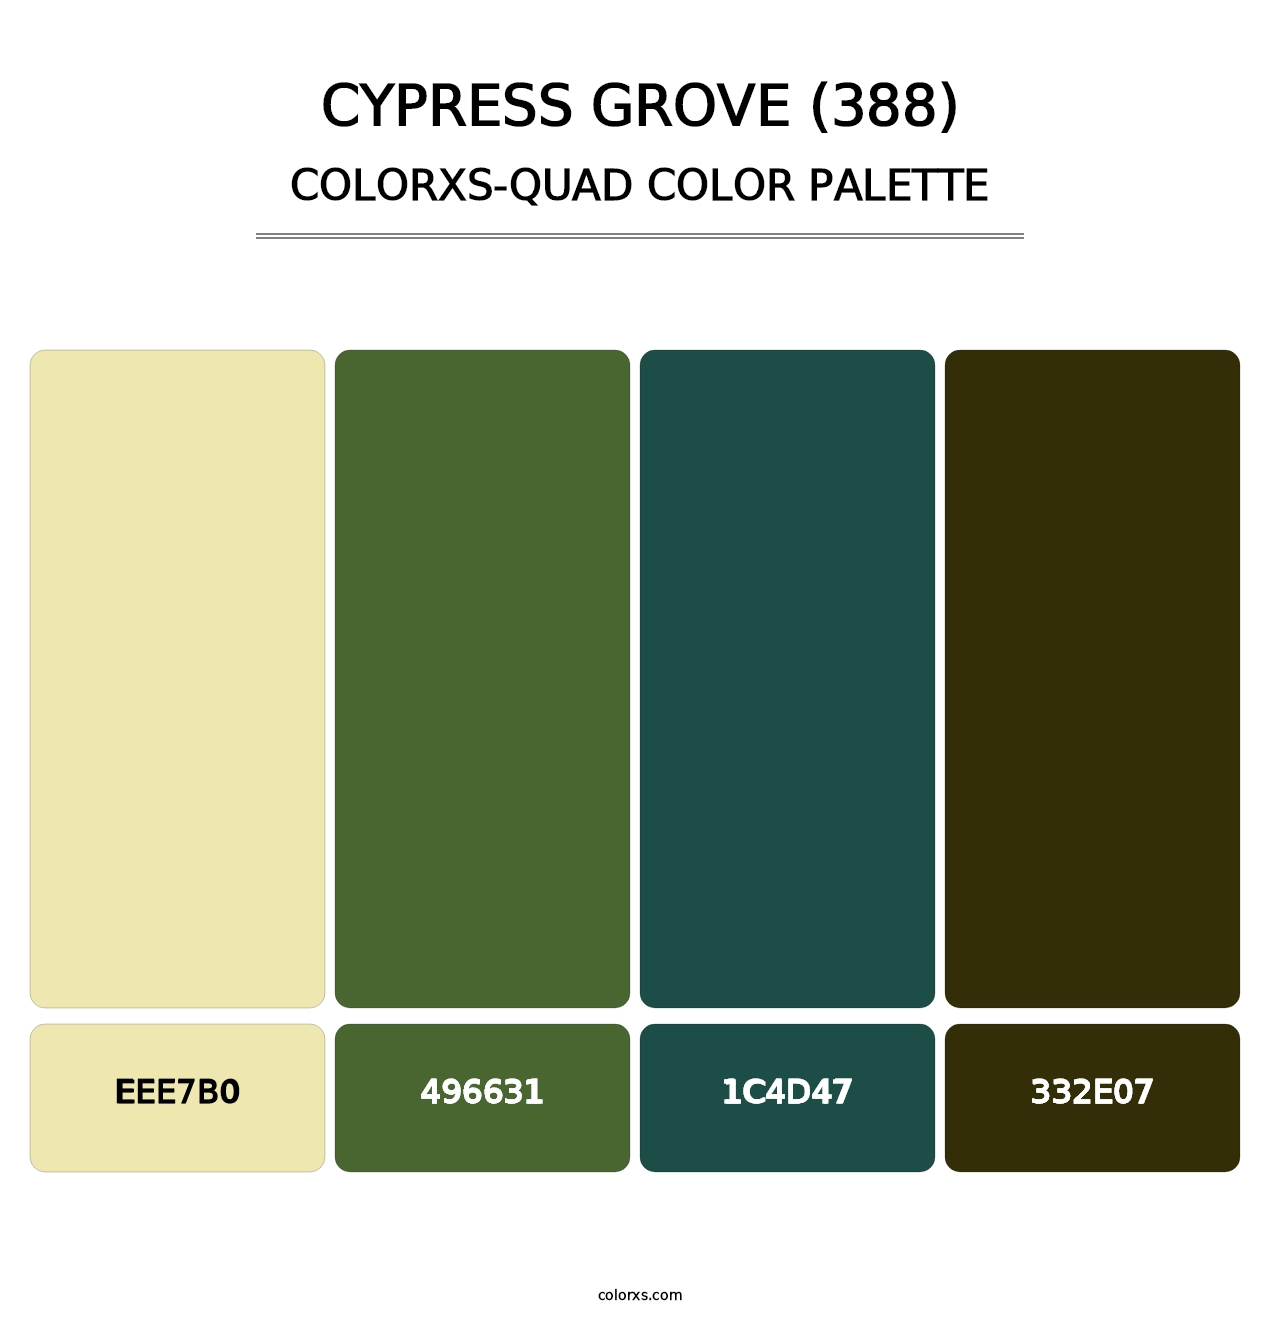 Cypress Grove (388) - Colorxs Quad Palette